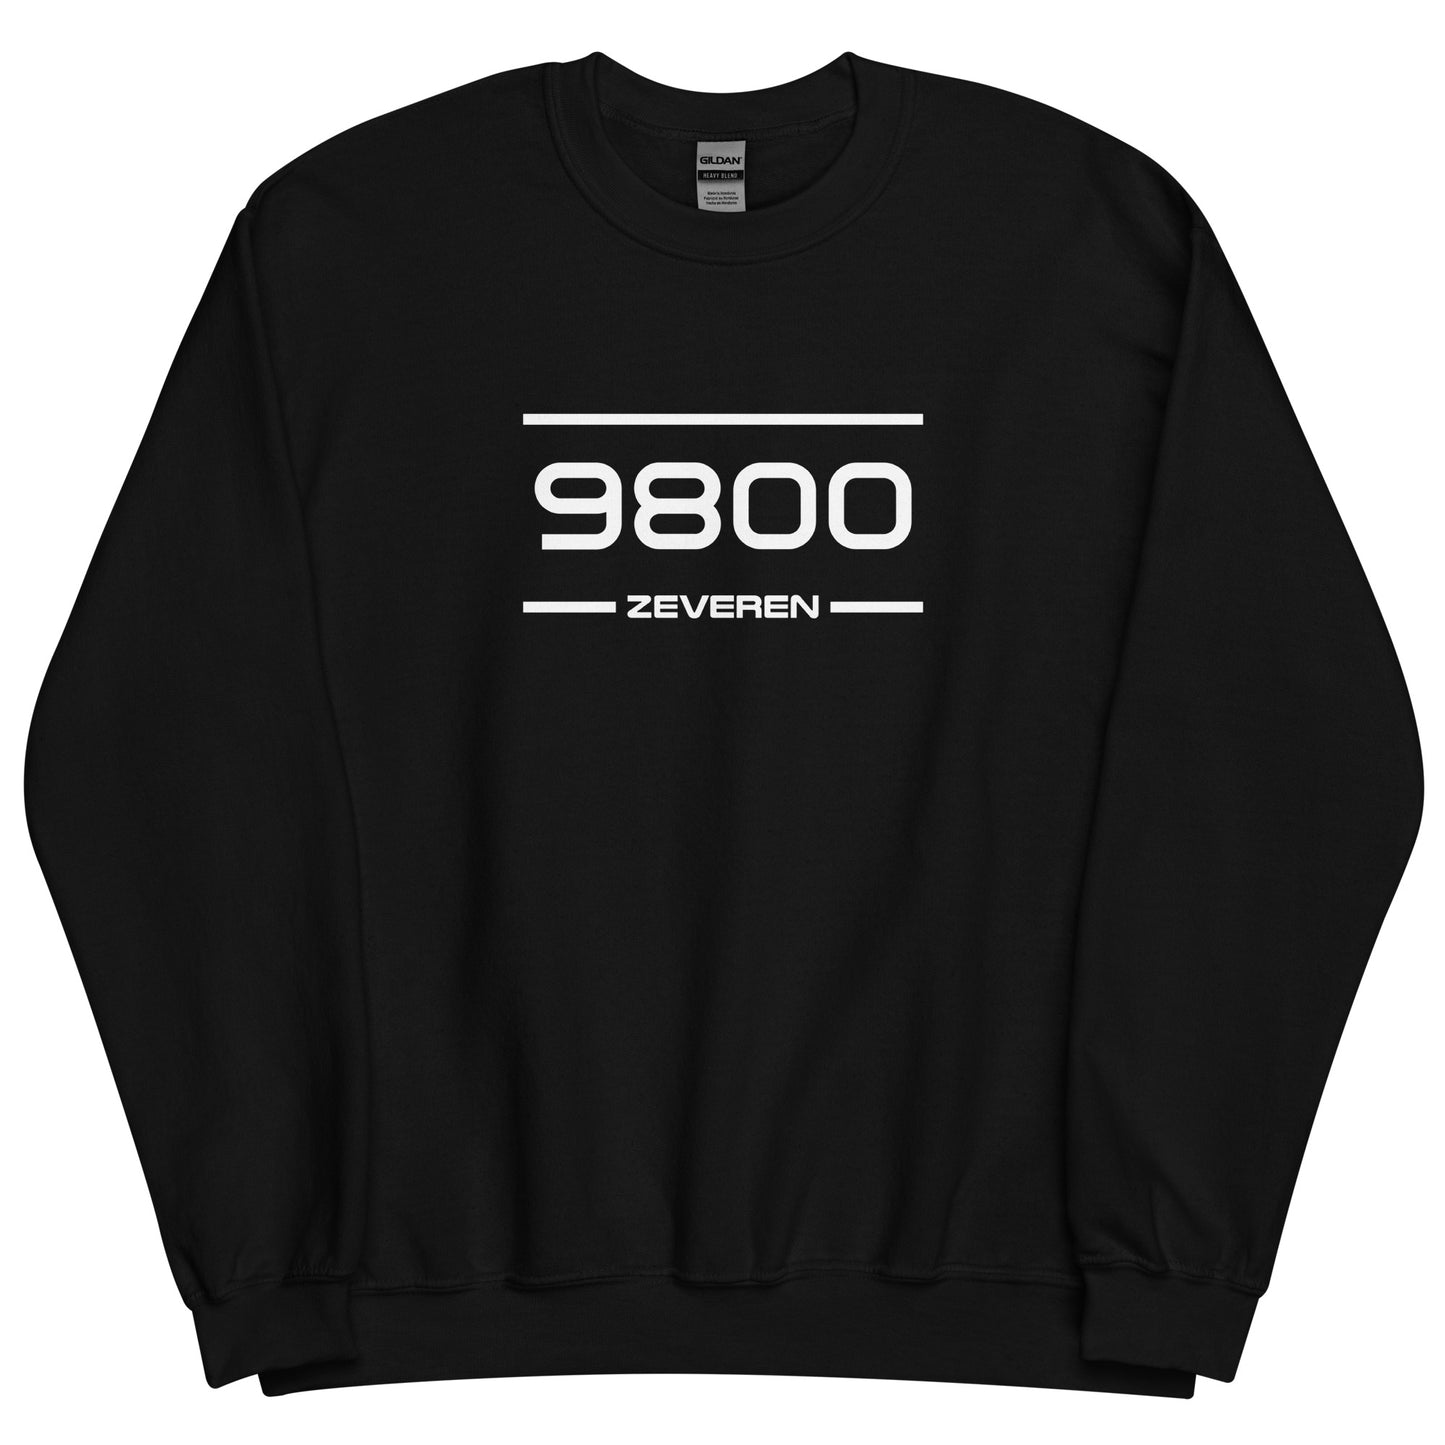 Sweater - 9800 - Zeveren (M/V)